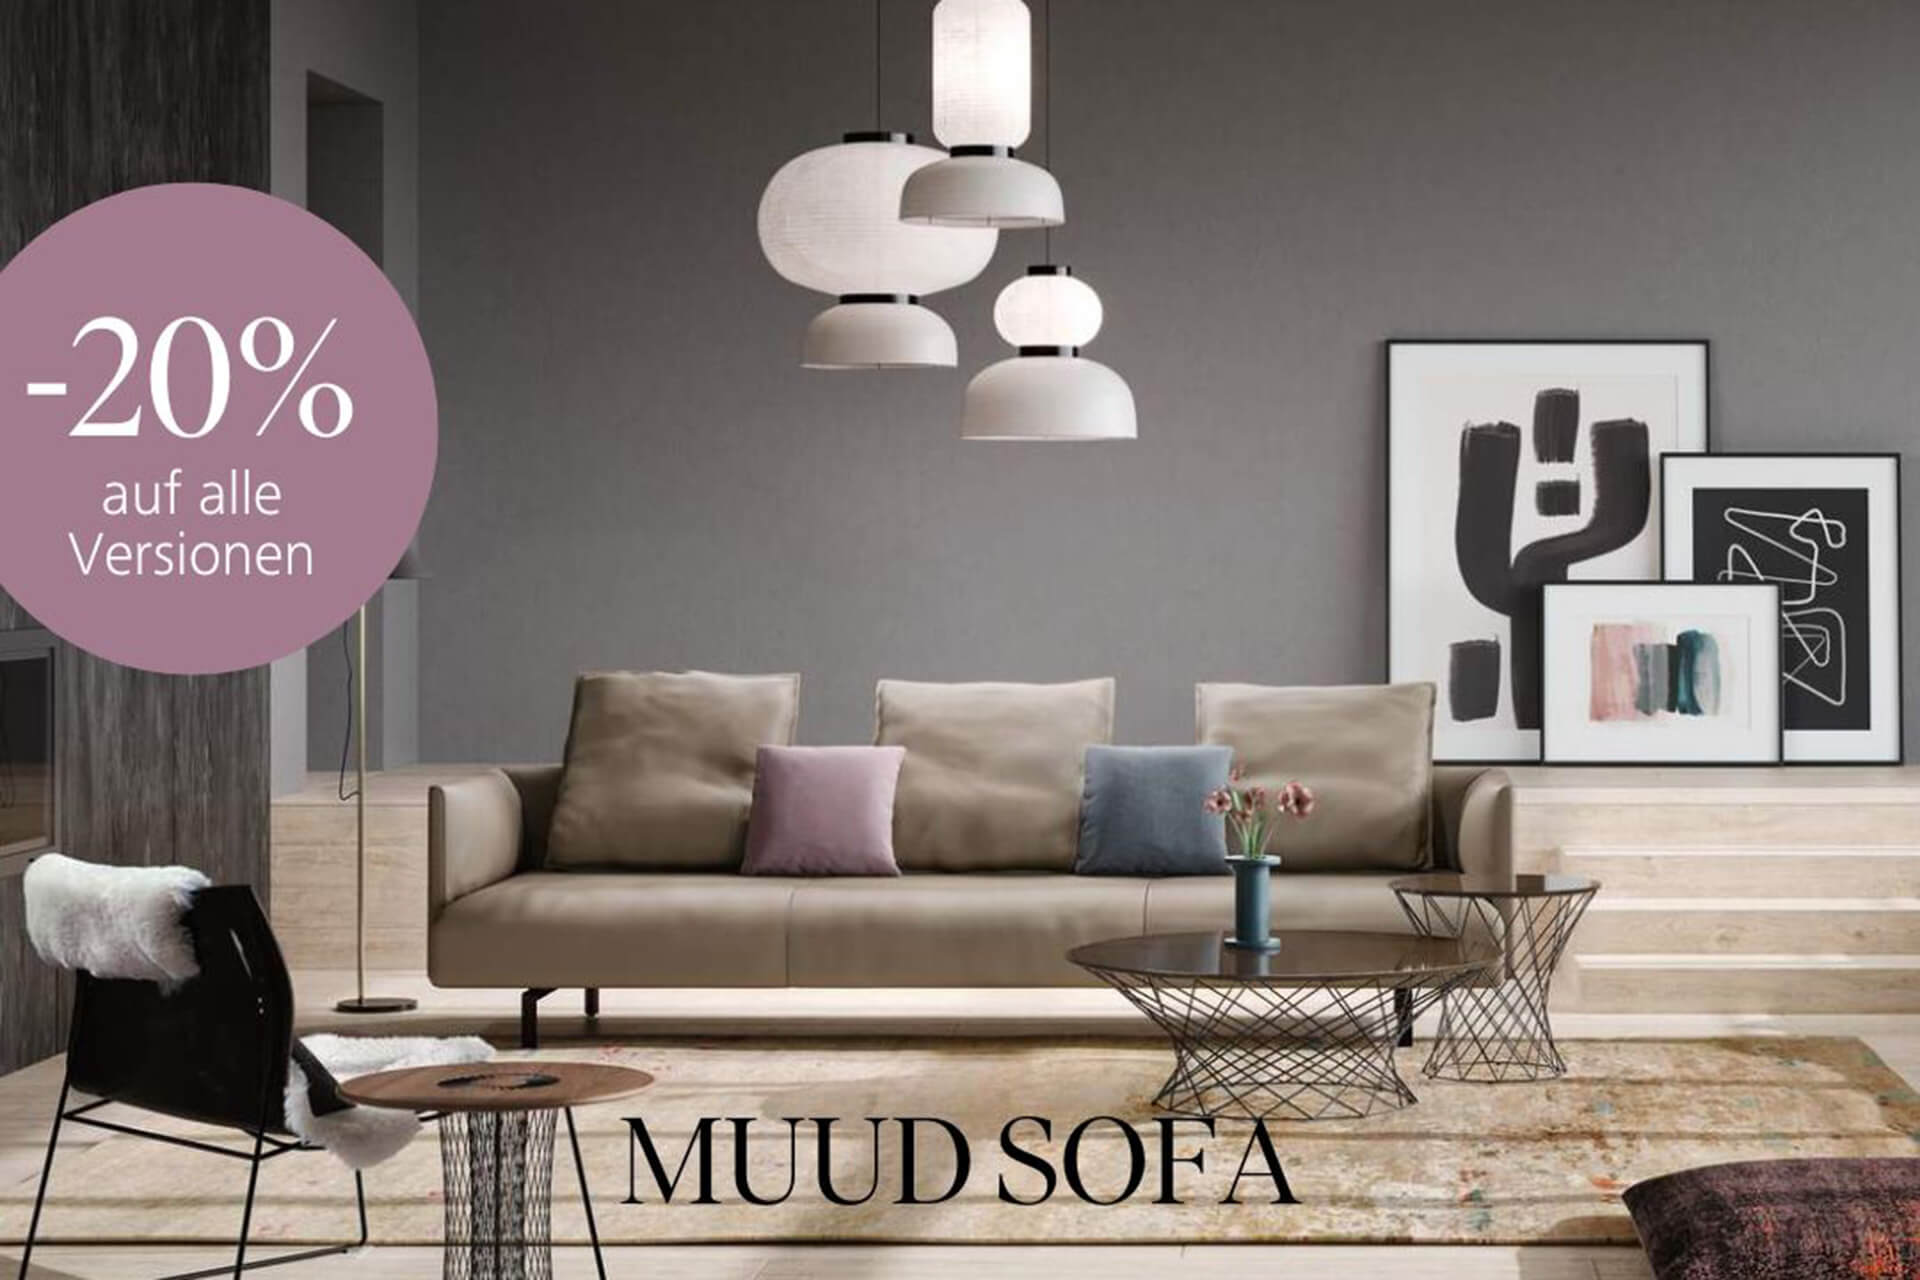 MUUD Sofa -20% auf alle Versionen